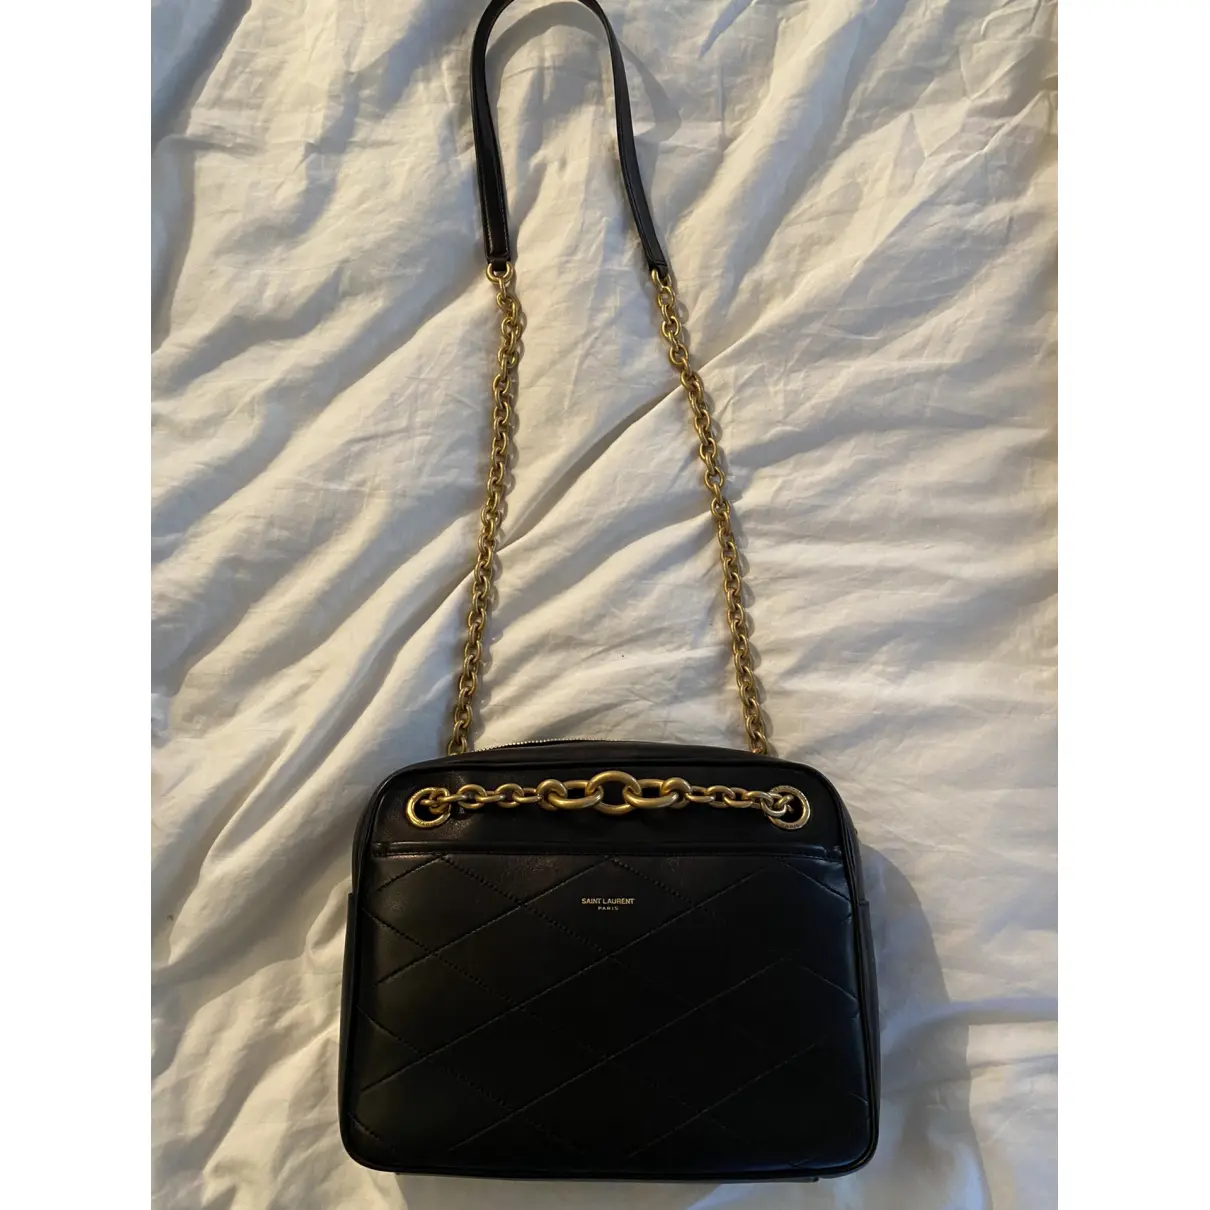 Buy Saint Laurent Le Maillon leather handbag online